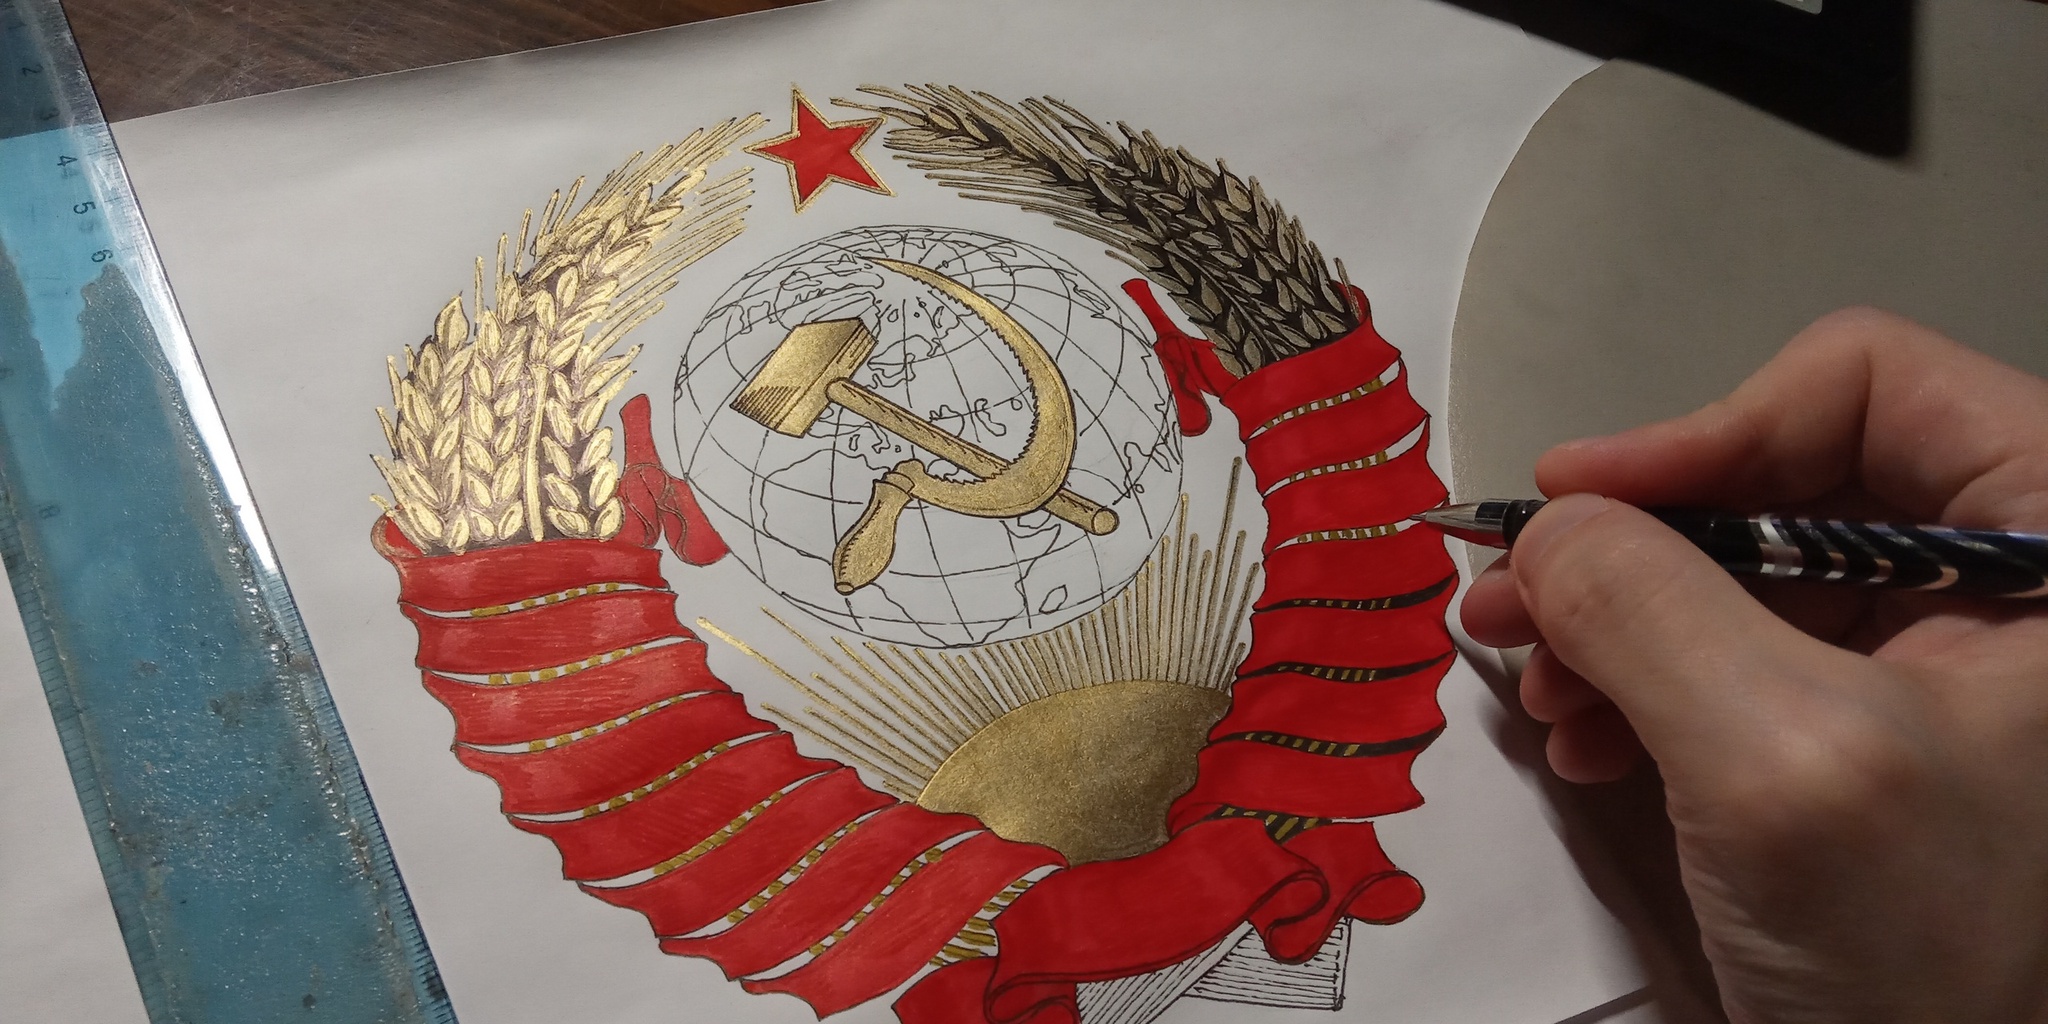 Герб СССР 1956 года